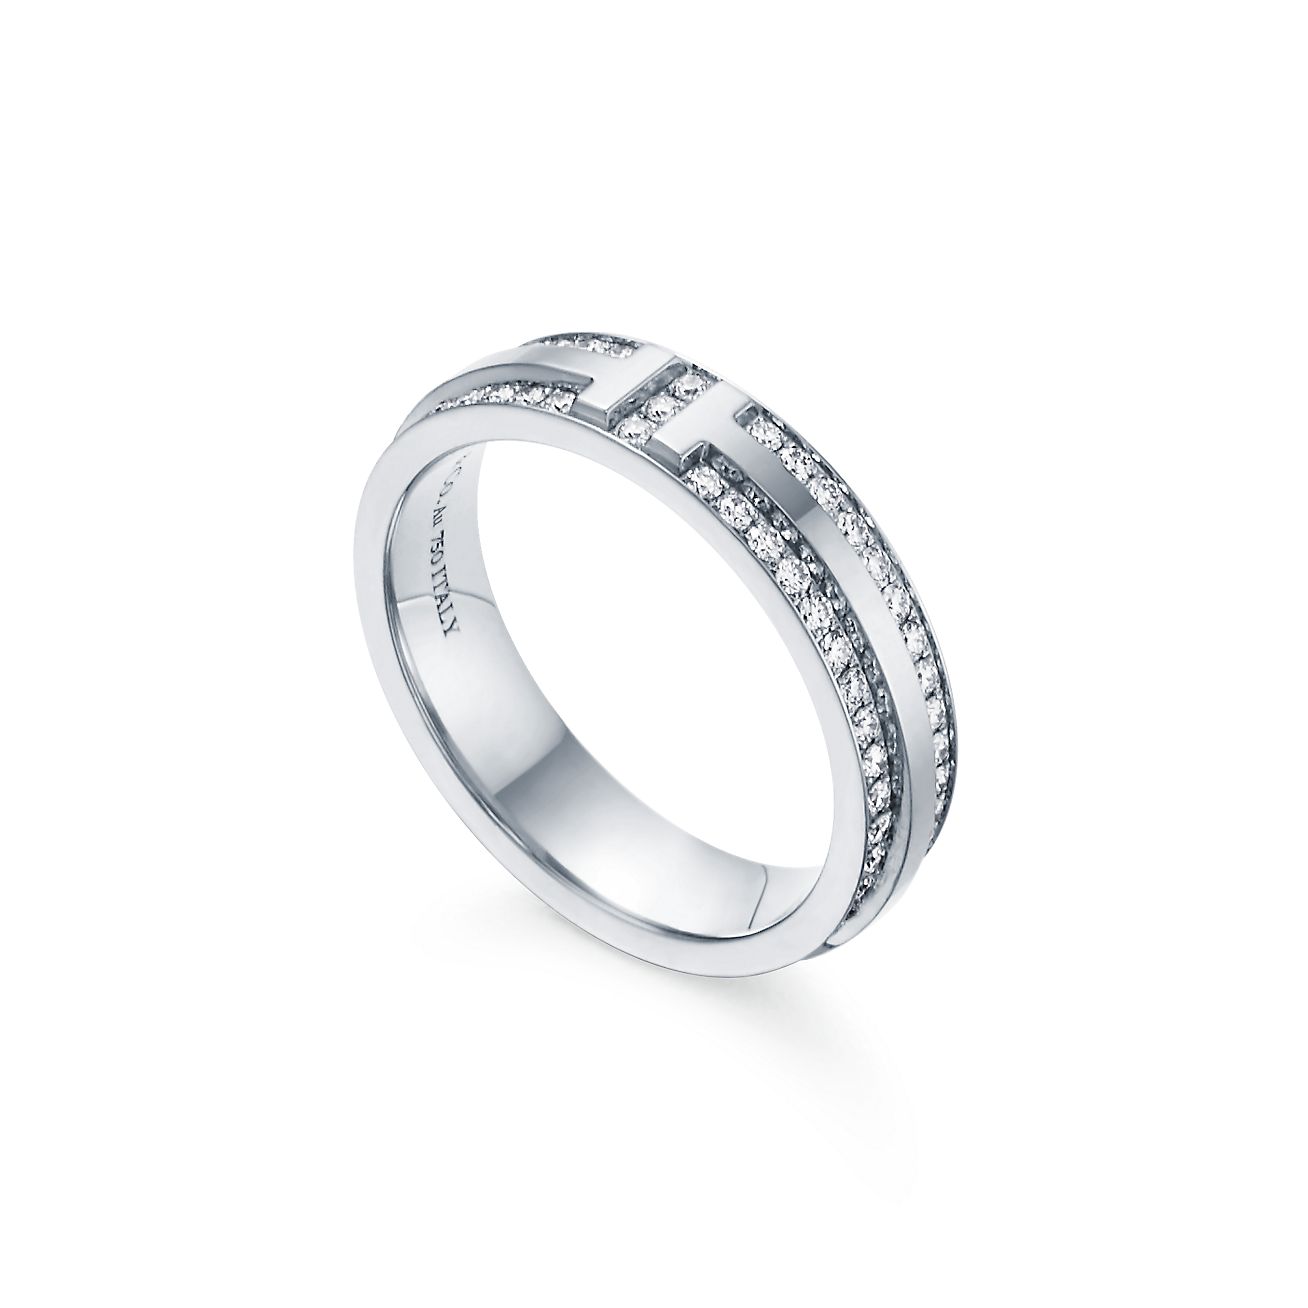 Tiffany T narrow pavé diamond ring in 